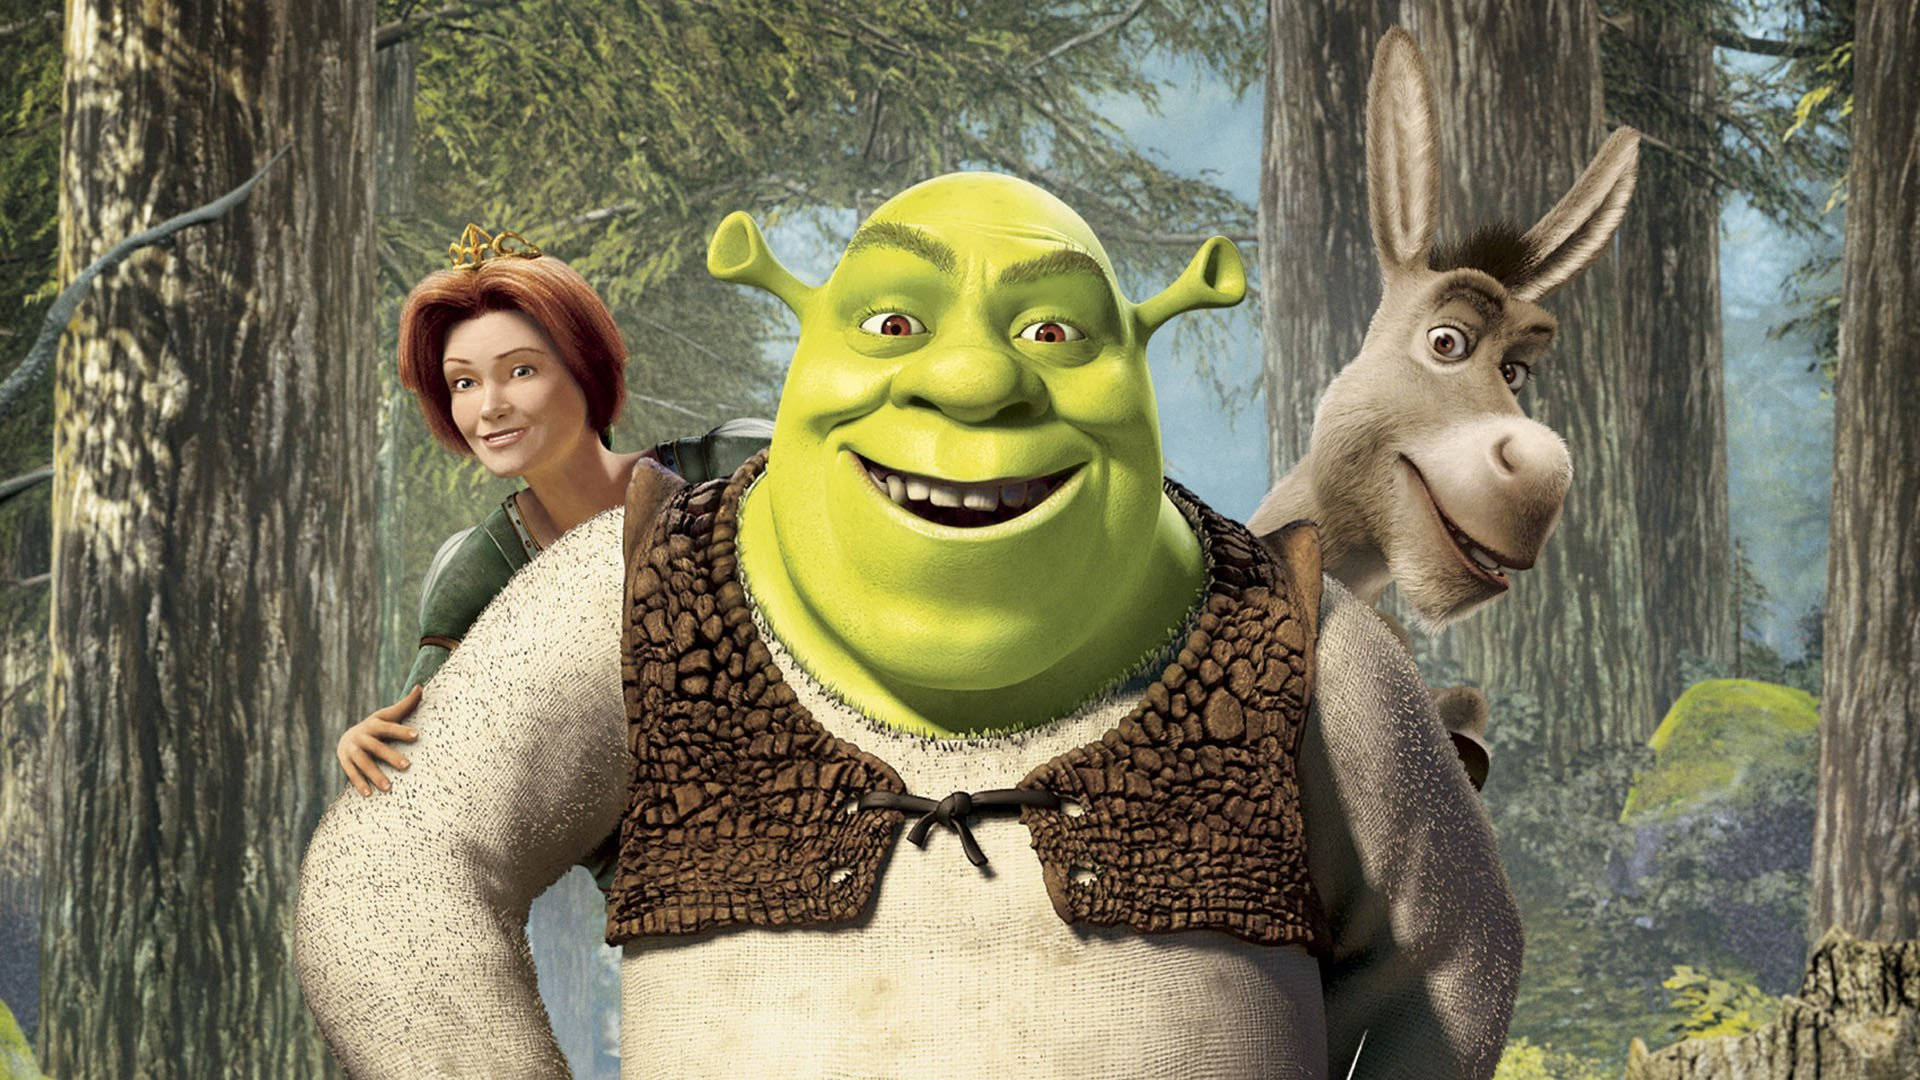 Shrek, Fiona, and Donkey